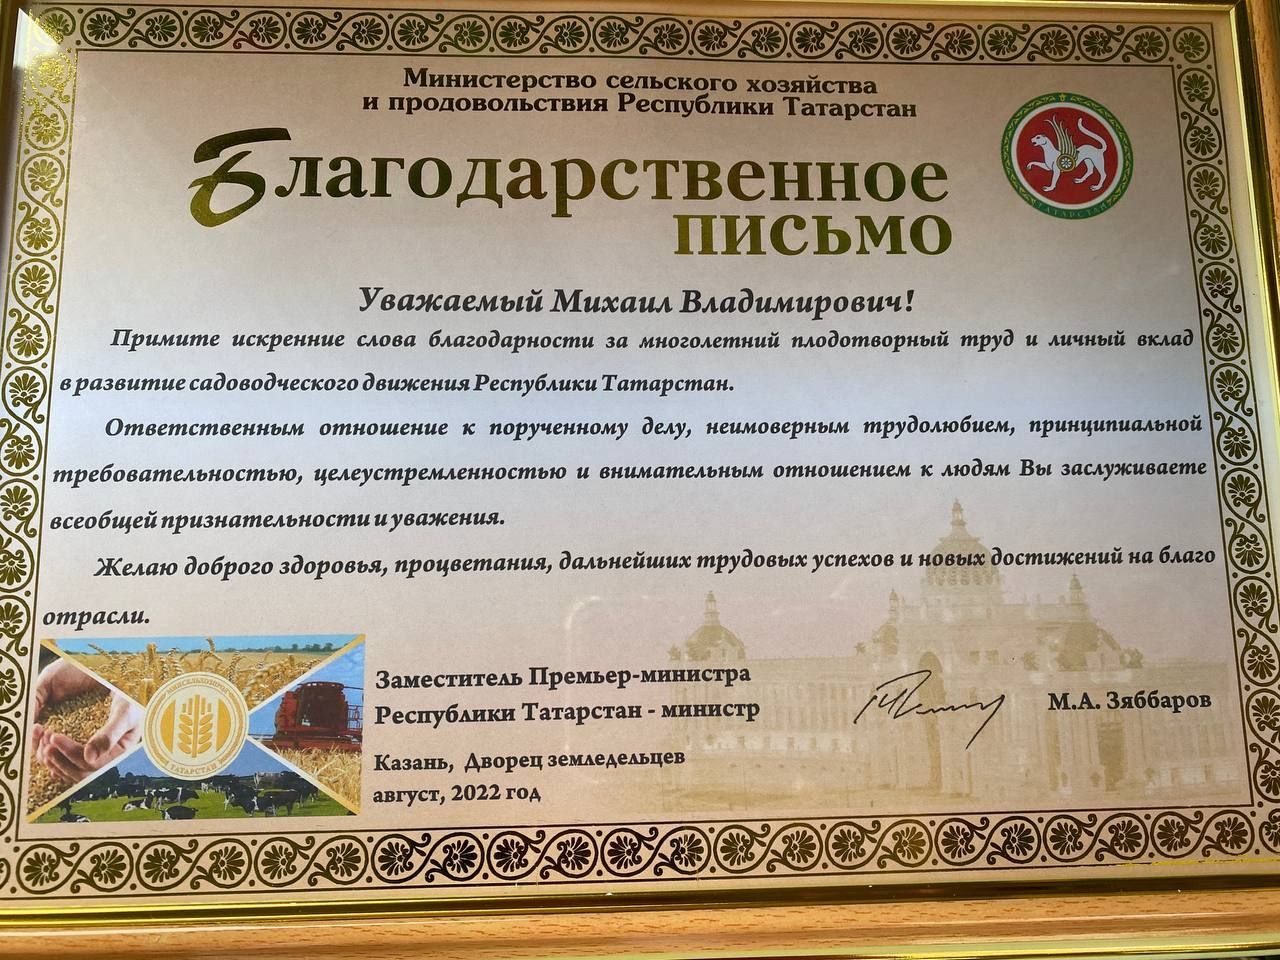 Менделеевец получил благодарственное письмо от Министерства сельского хозяйства РТ